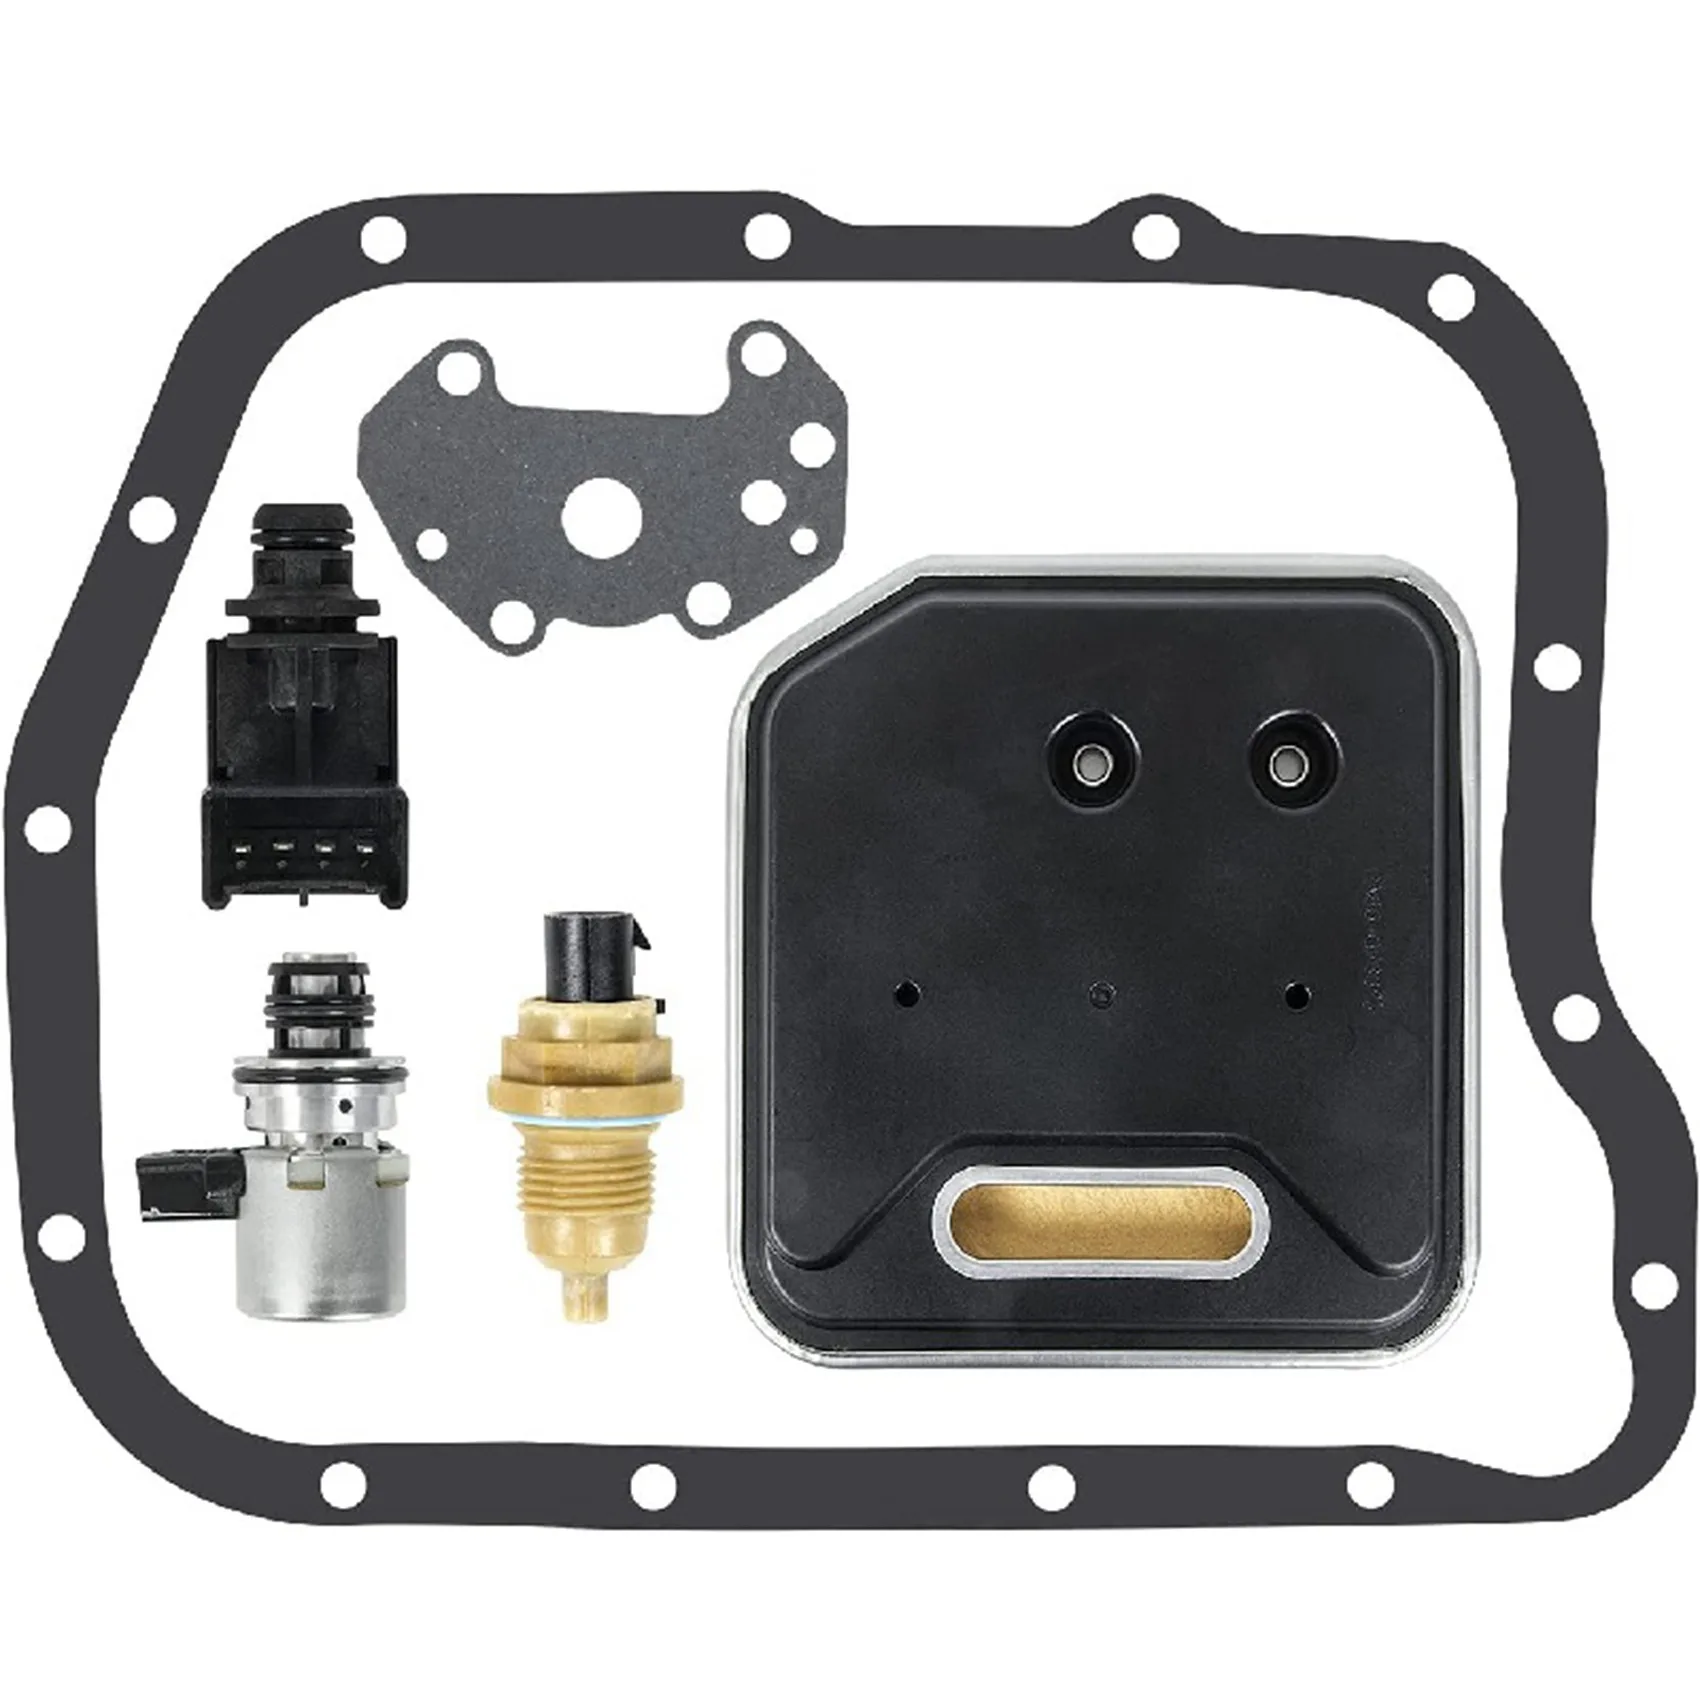 

42RE Transmission Solenoid Valve Governor Pressure Sensor Filter Kit A518 618 46Re 47Re for-Jeep Chrysler-Dodge